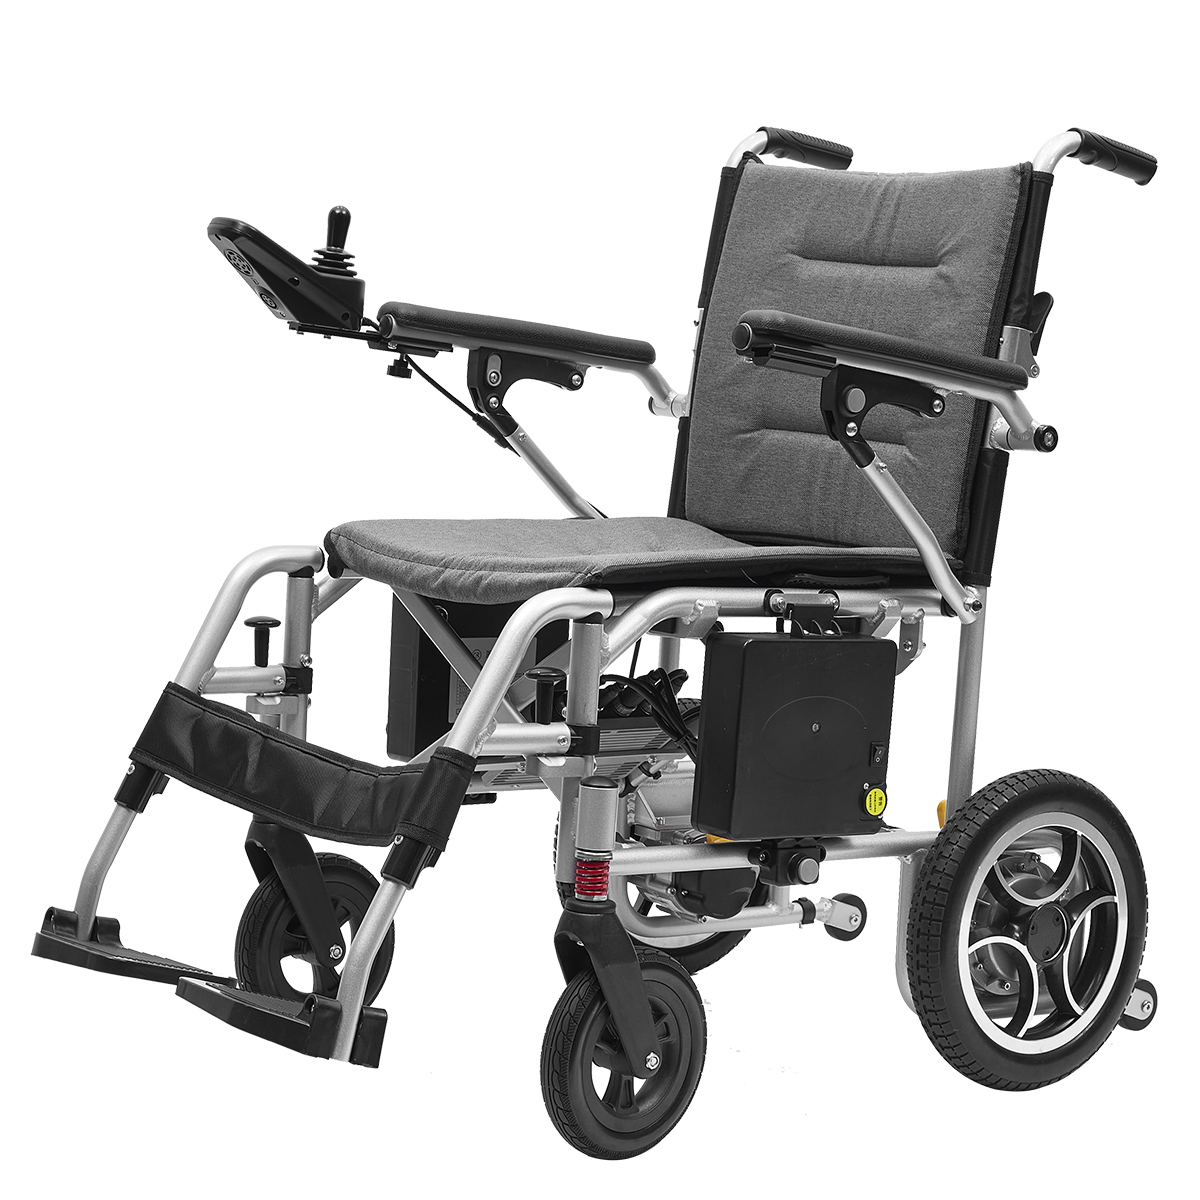 Behindertengerechter, motorisierter Rollstuhl mit Fernbedienung für Behinderte